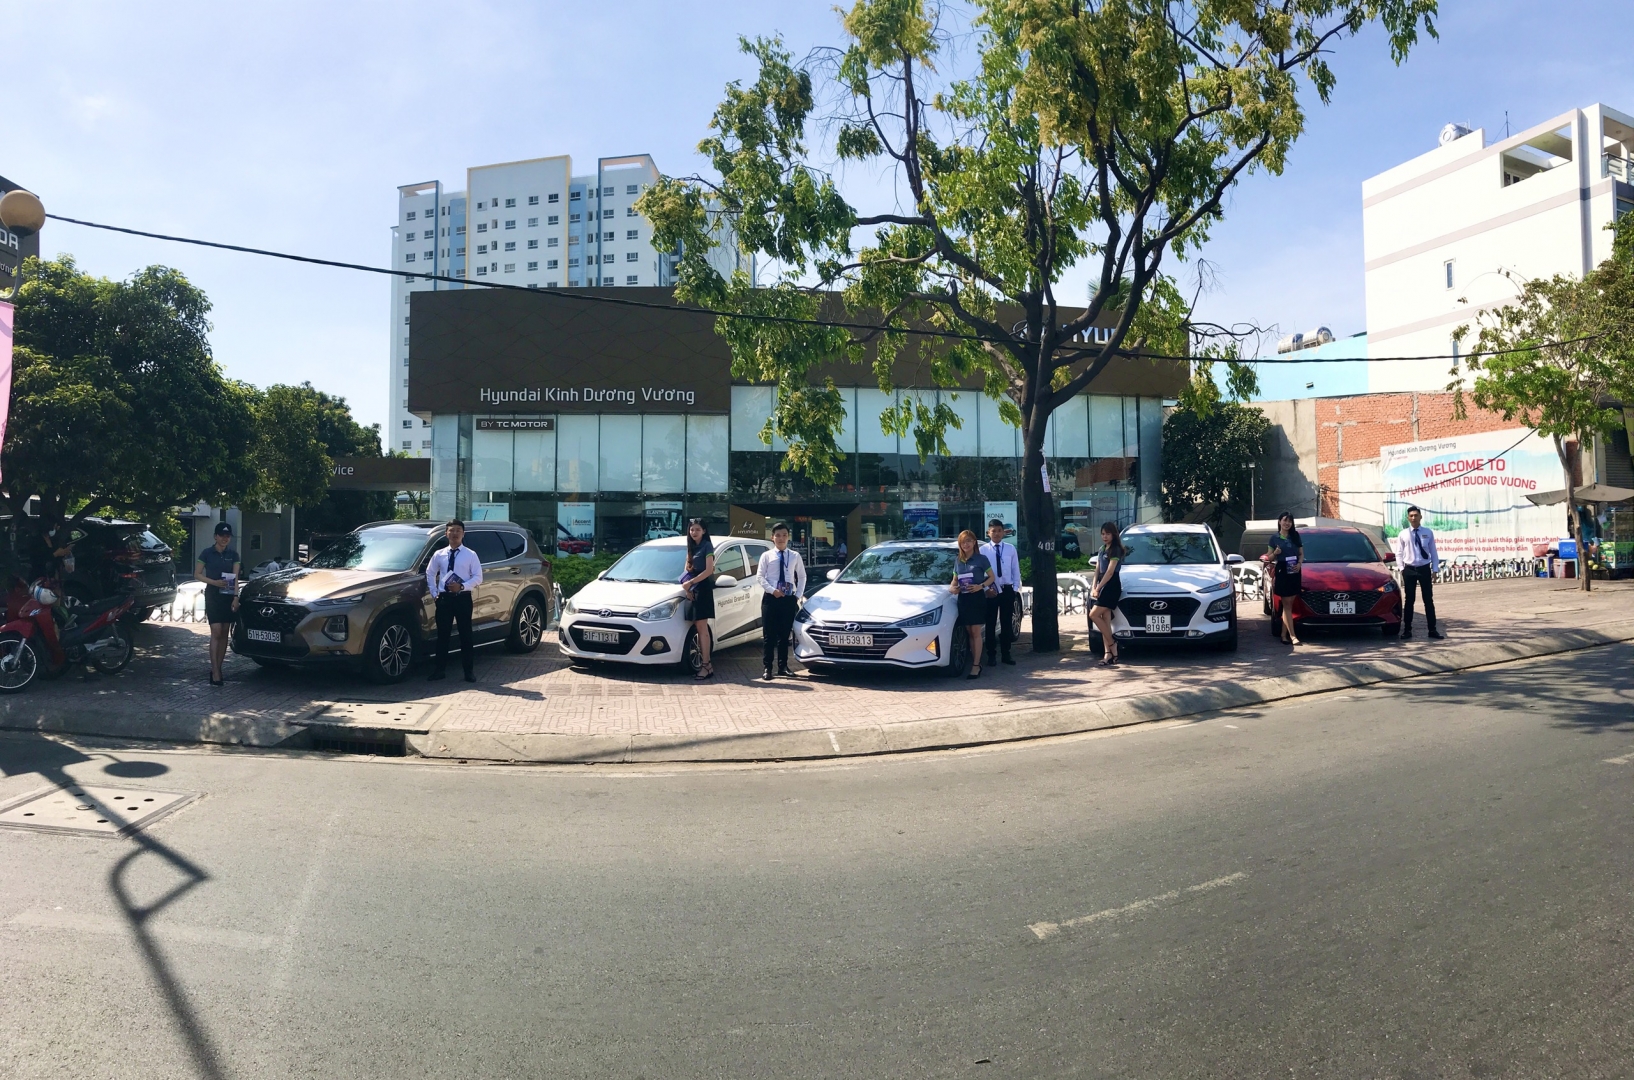 Roadshow Hyundai Kinh Dương Vương là sự kiện mang đến cho bạn cơ hội trải nghiệm những mẫu xe đẳng cấp của Hyundai. Bên cạnh đó, bạn còn có thể tham gia các hoạt động thú vị như thử xe, tư vấn miễn phí và nhận quà vô cùng hấp dẫn. Đừng bỏ lỡ cơ hội này để khám phá dòng xe ưng ý của bạn.